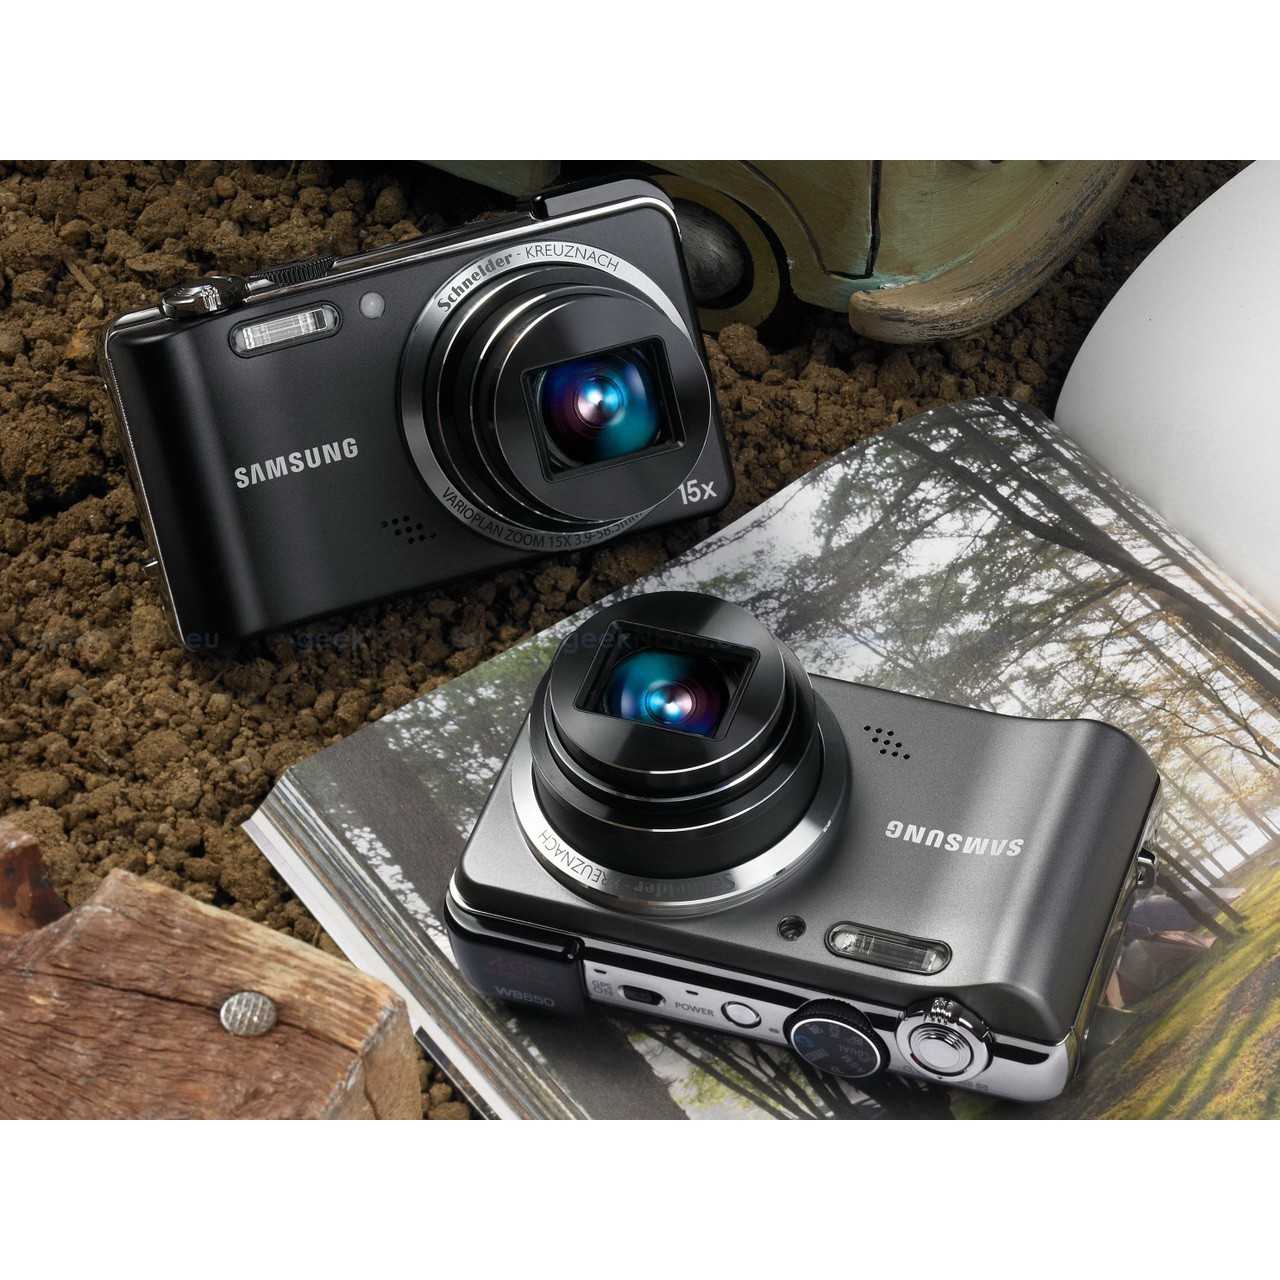 Samsung wb650 - купить  в донецк, скидки, цена, отзывы, обзор, характеристики - фотоаппараты цифровые